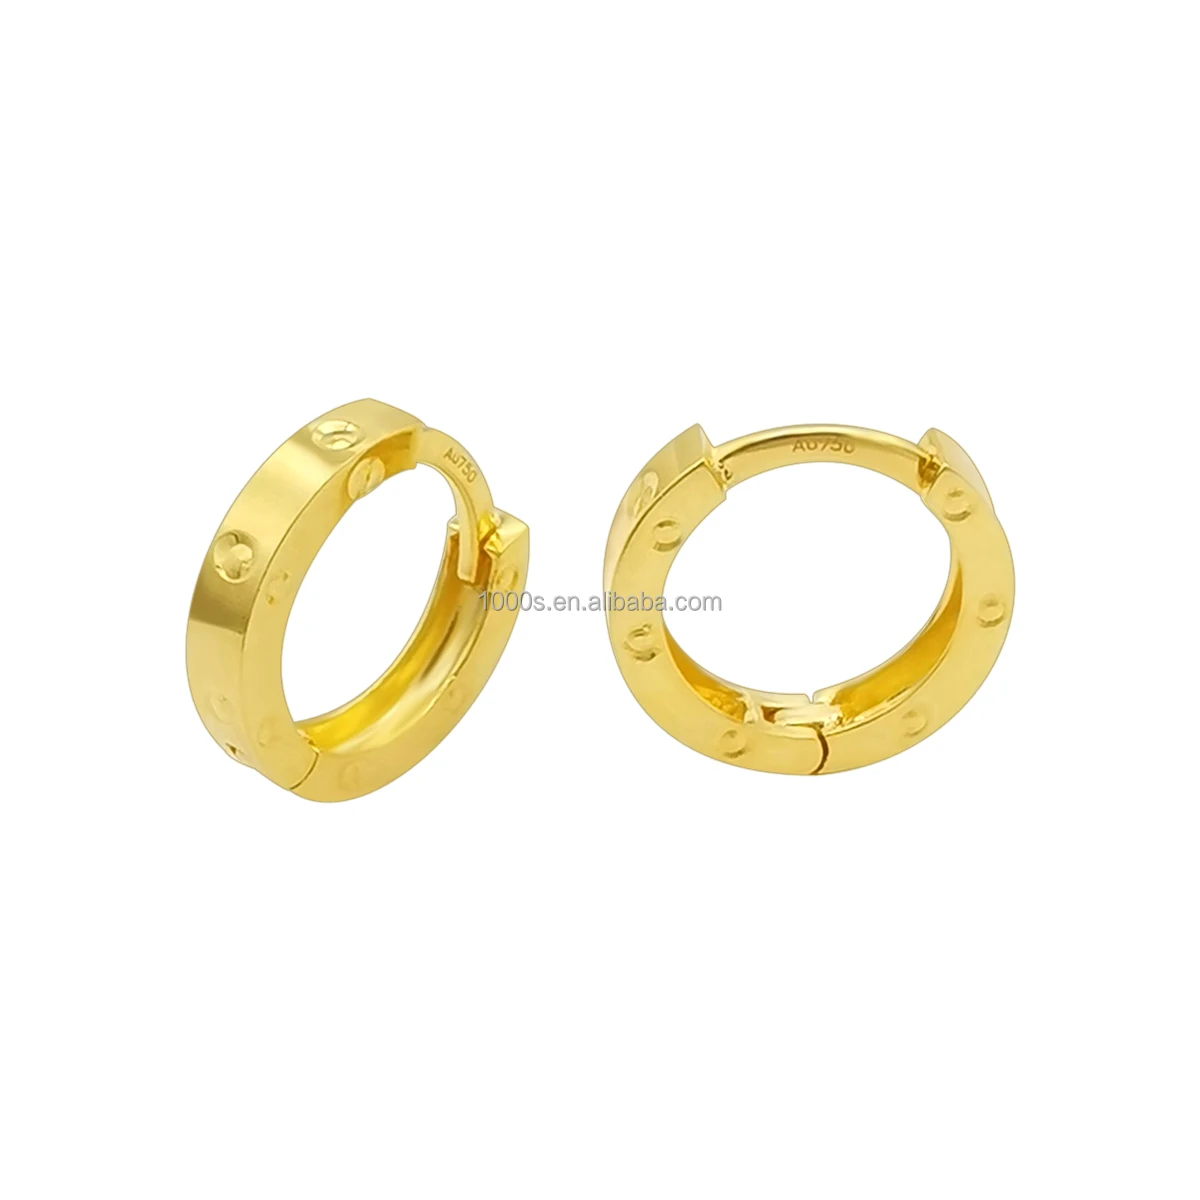 

Trendy Real 18K Gold Huggie Earring 18K Yellow Gold Small Hoop Earring Muti-Size Cuff Earrings Hoops